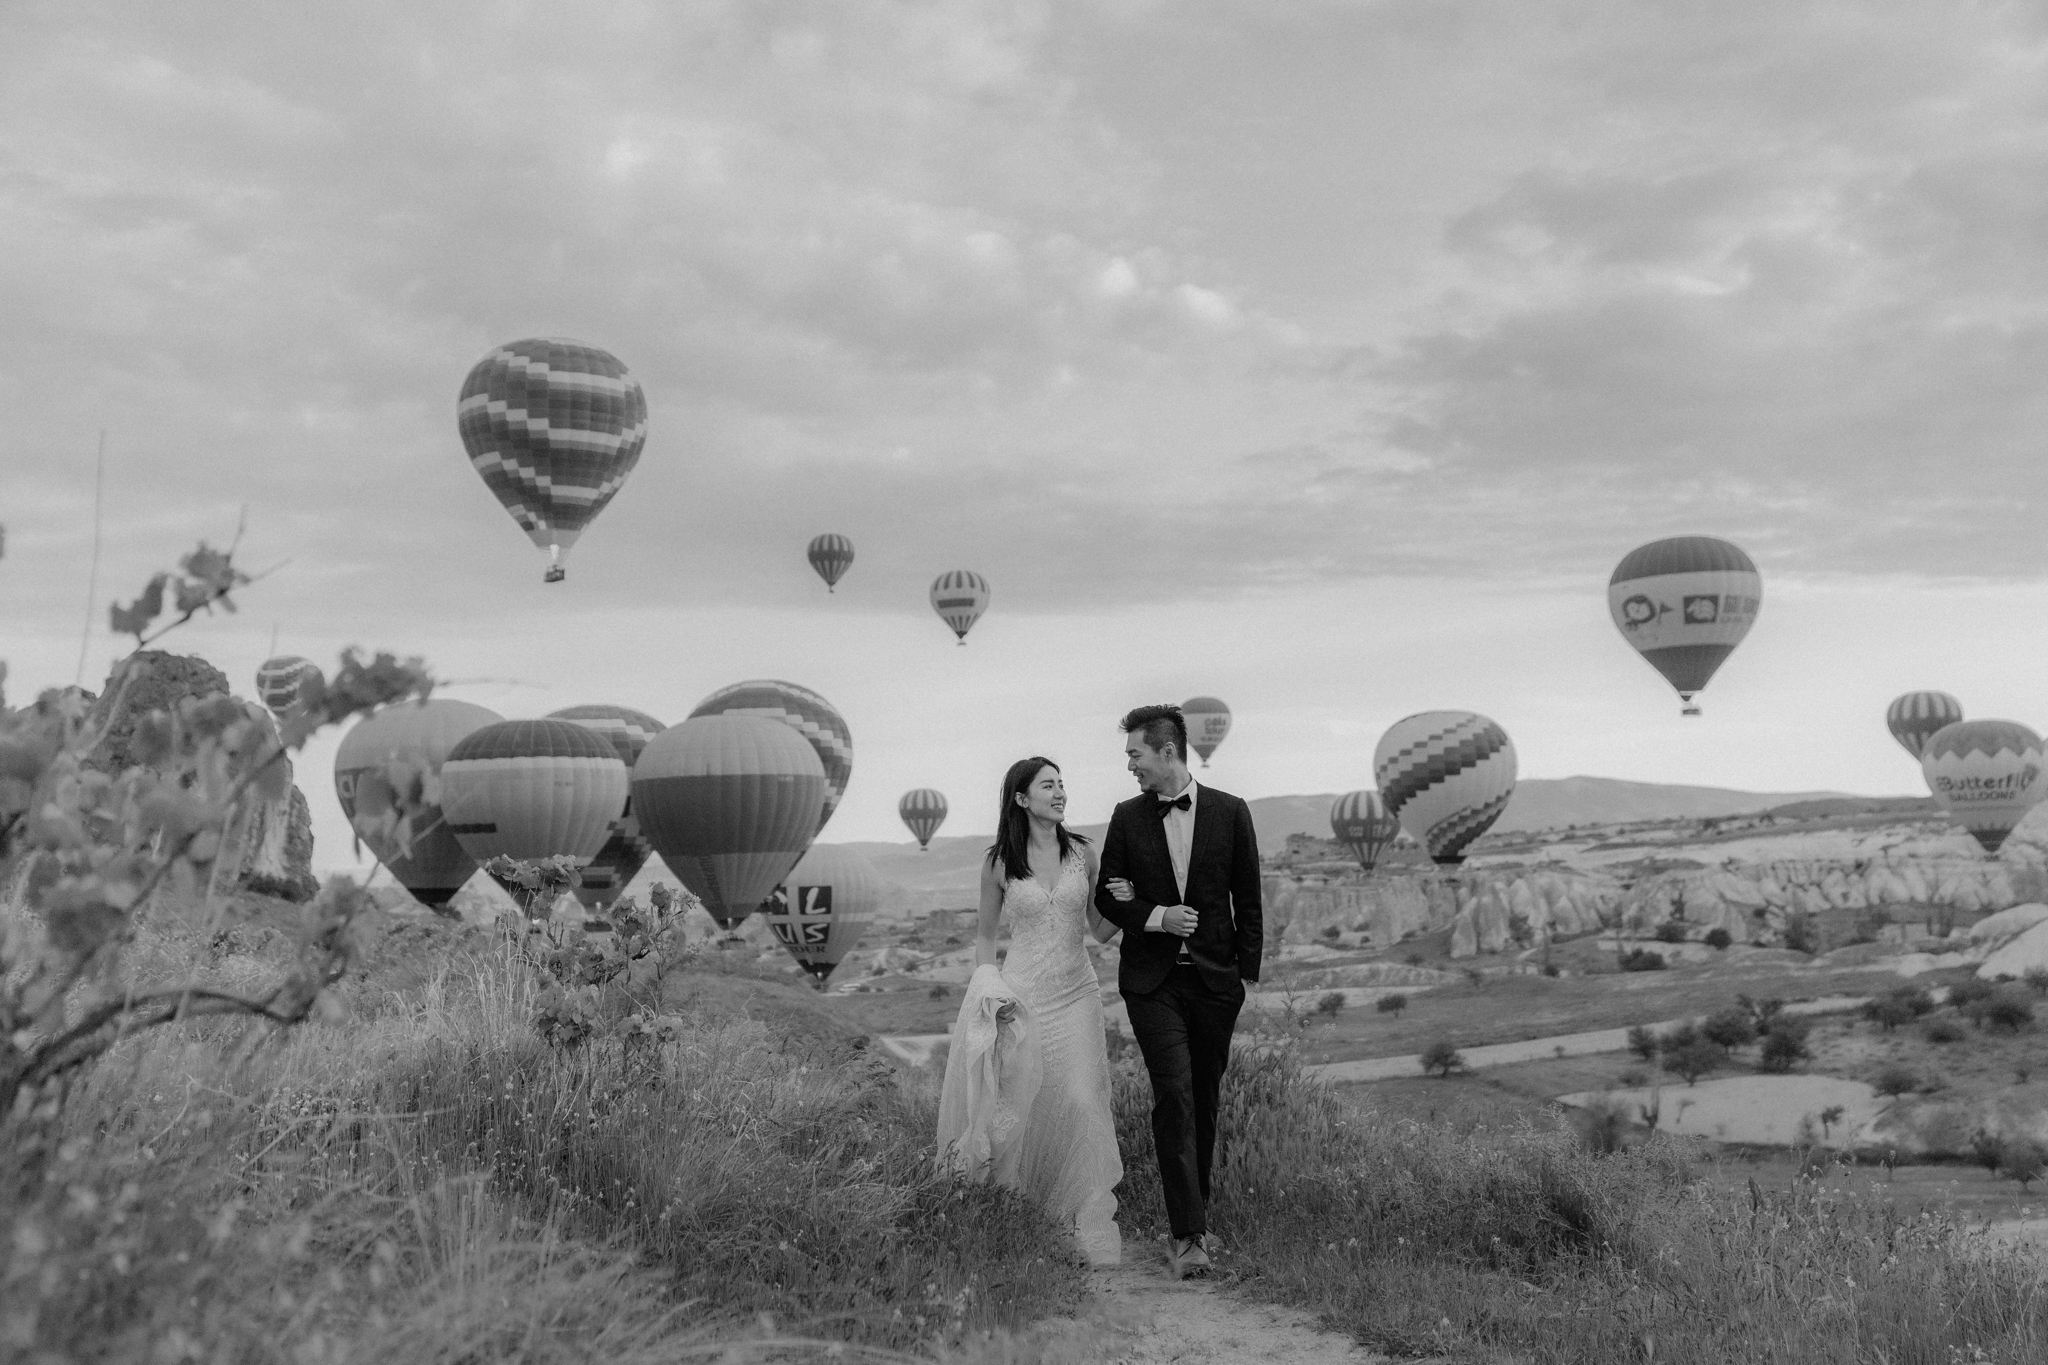 海外婚紗, 土耳其婚紗, 熱氣球婚紗, EASTERN WEDDING, Donfer, 東法